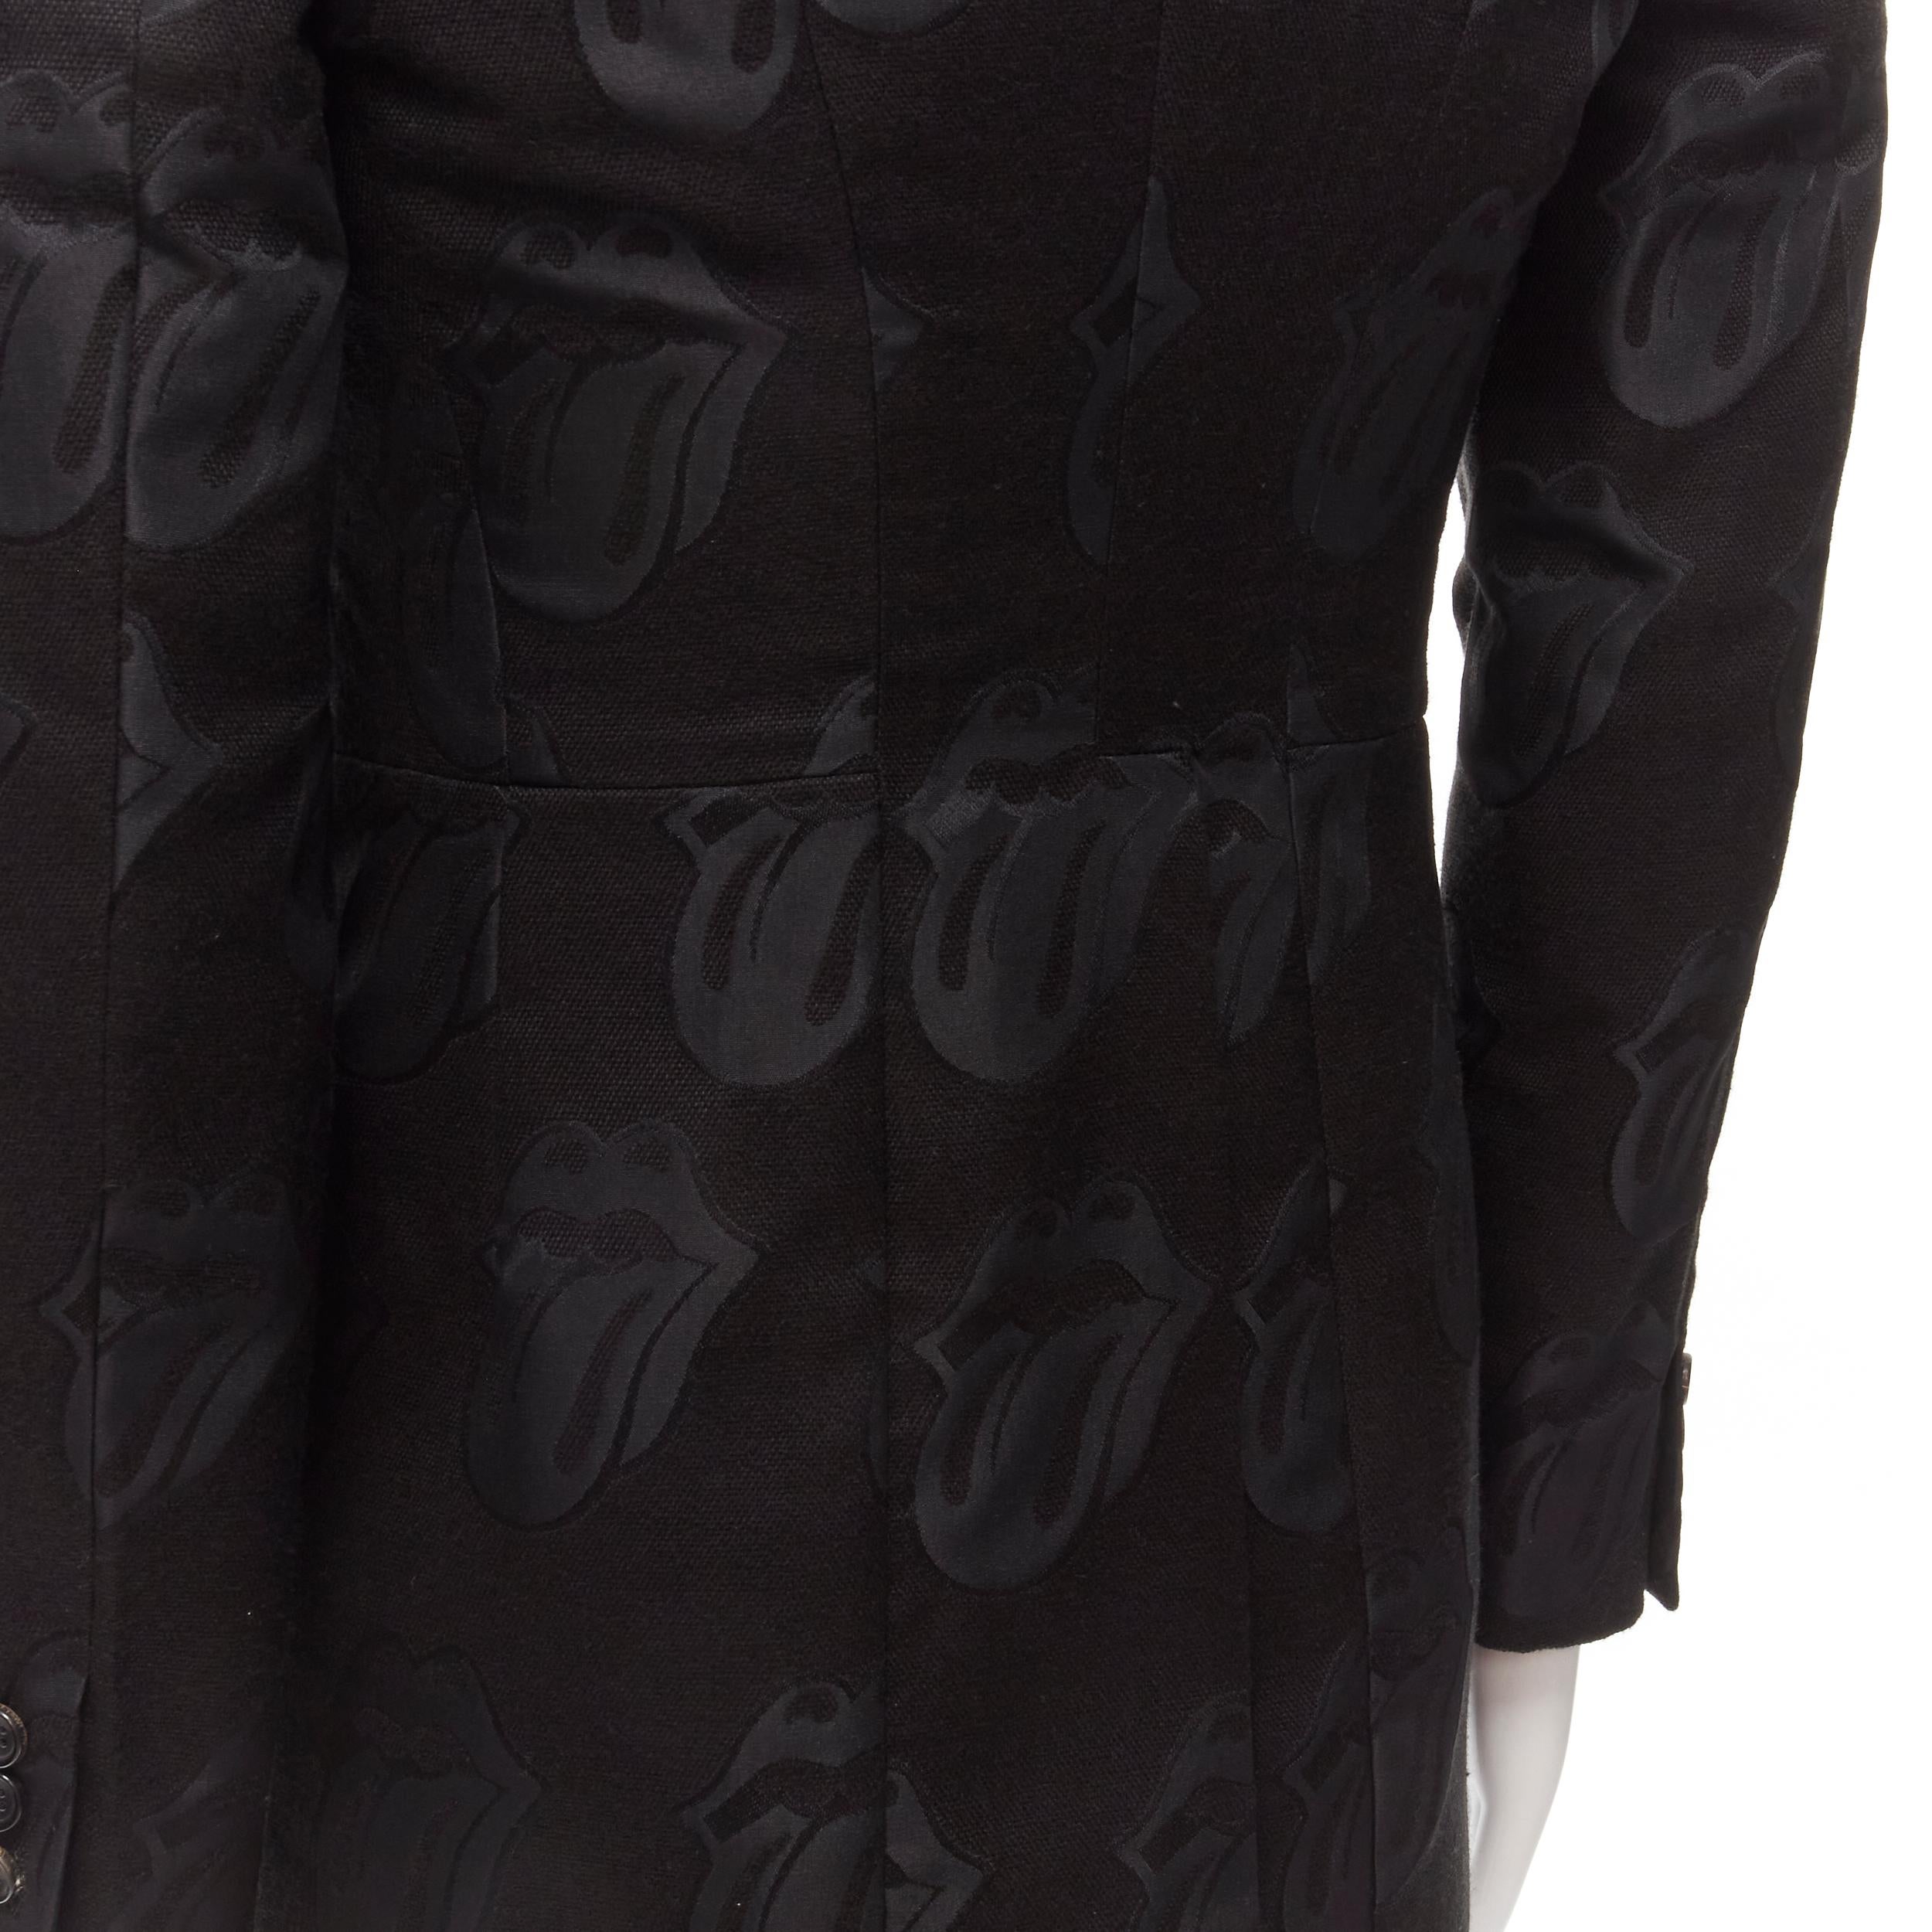 COMME DES GARCONS HOMME PLUS 2005 Rolling Stone jacquard black tailcoat blazer M For Sale 5